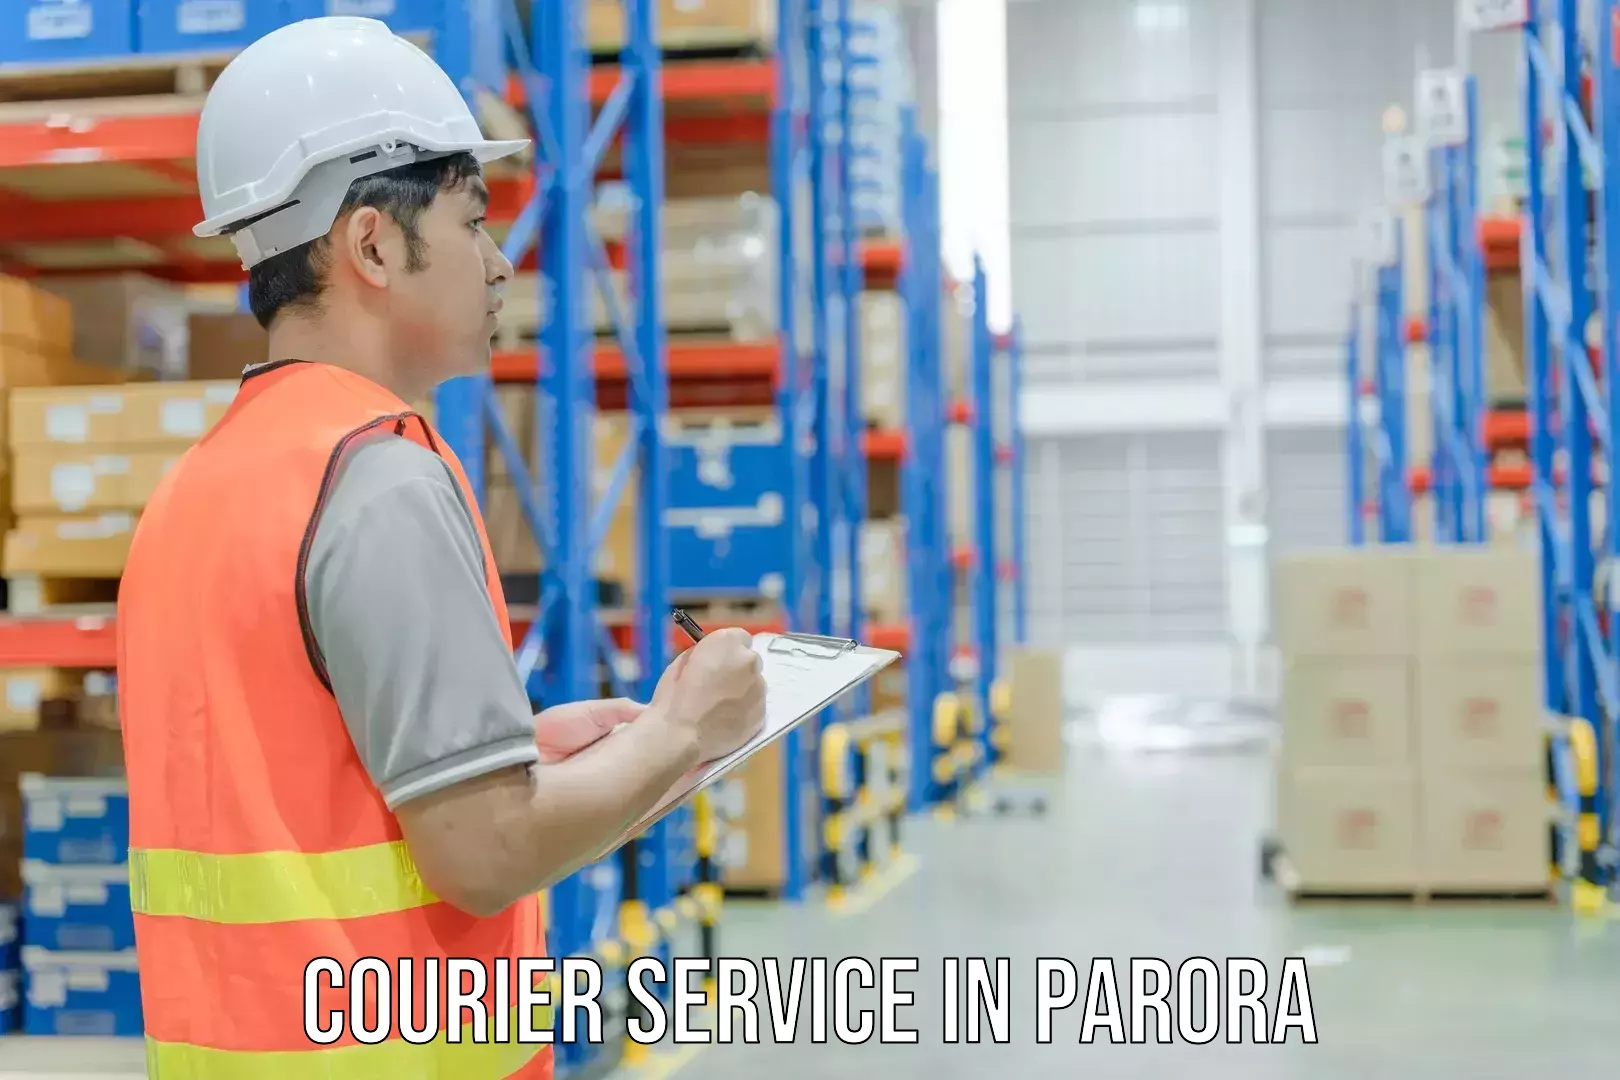 Courier rate comparison in Parora